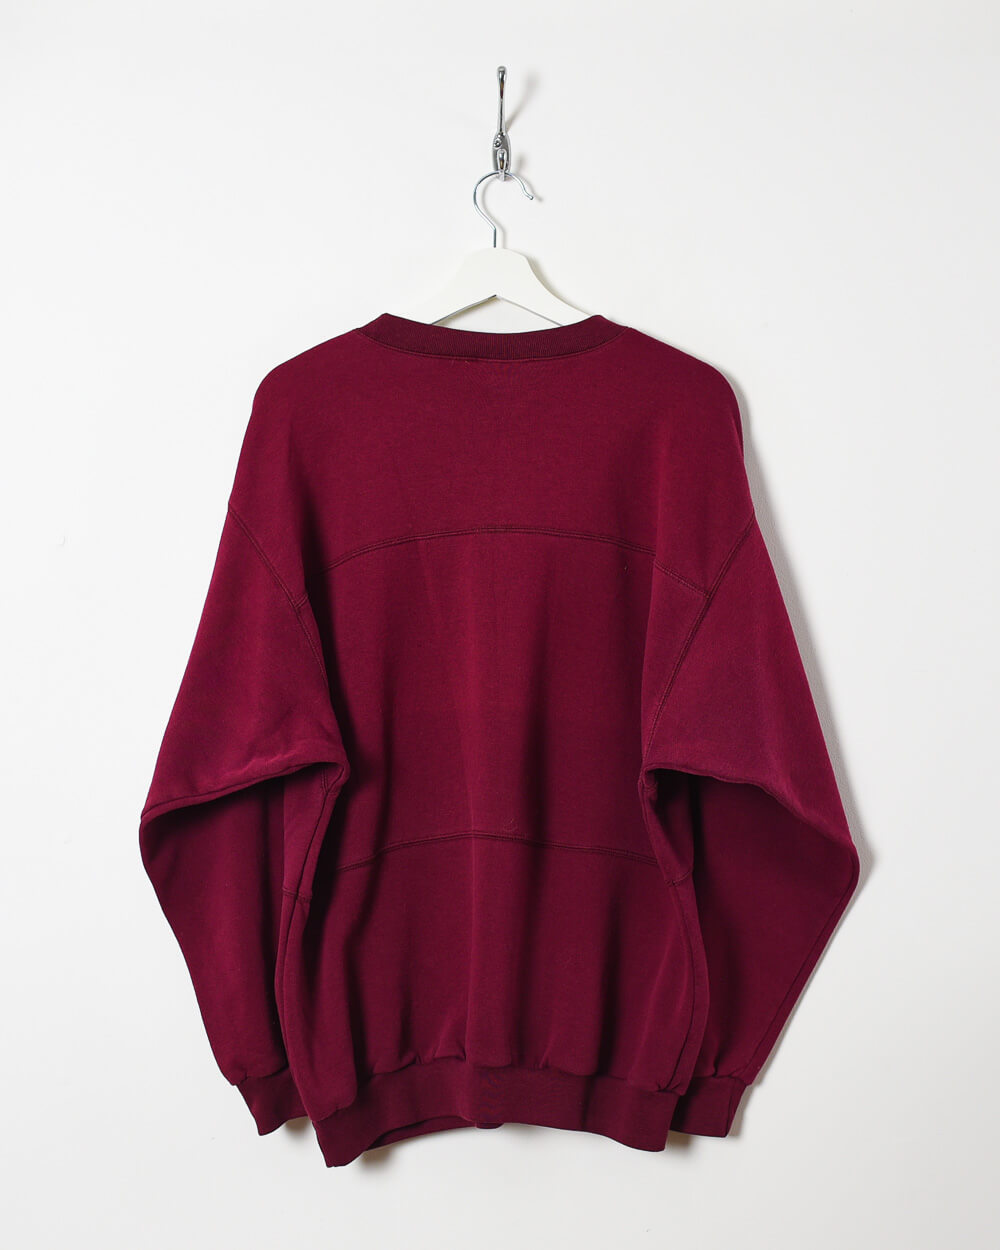 Maroon Adidas Sweatshirt - Medium